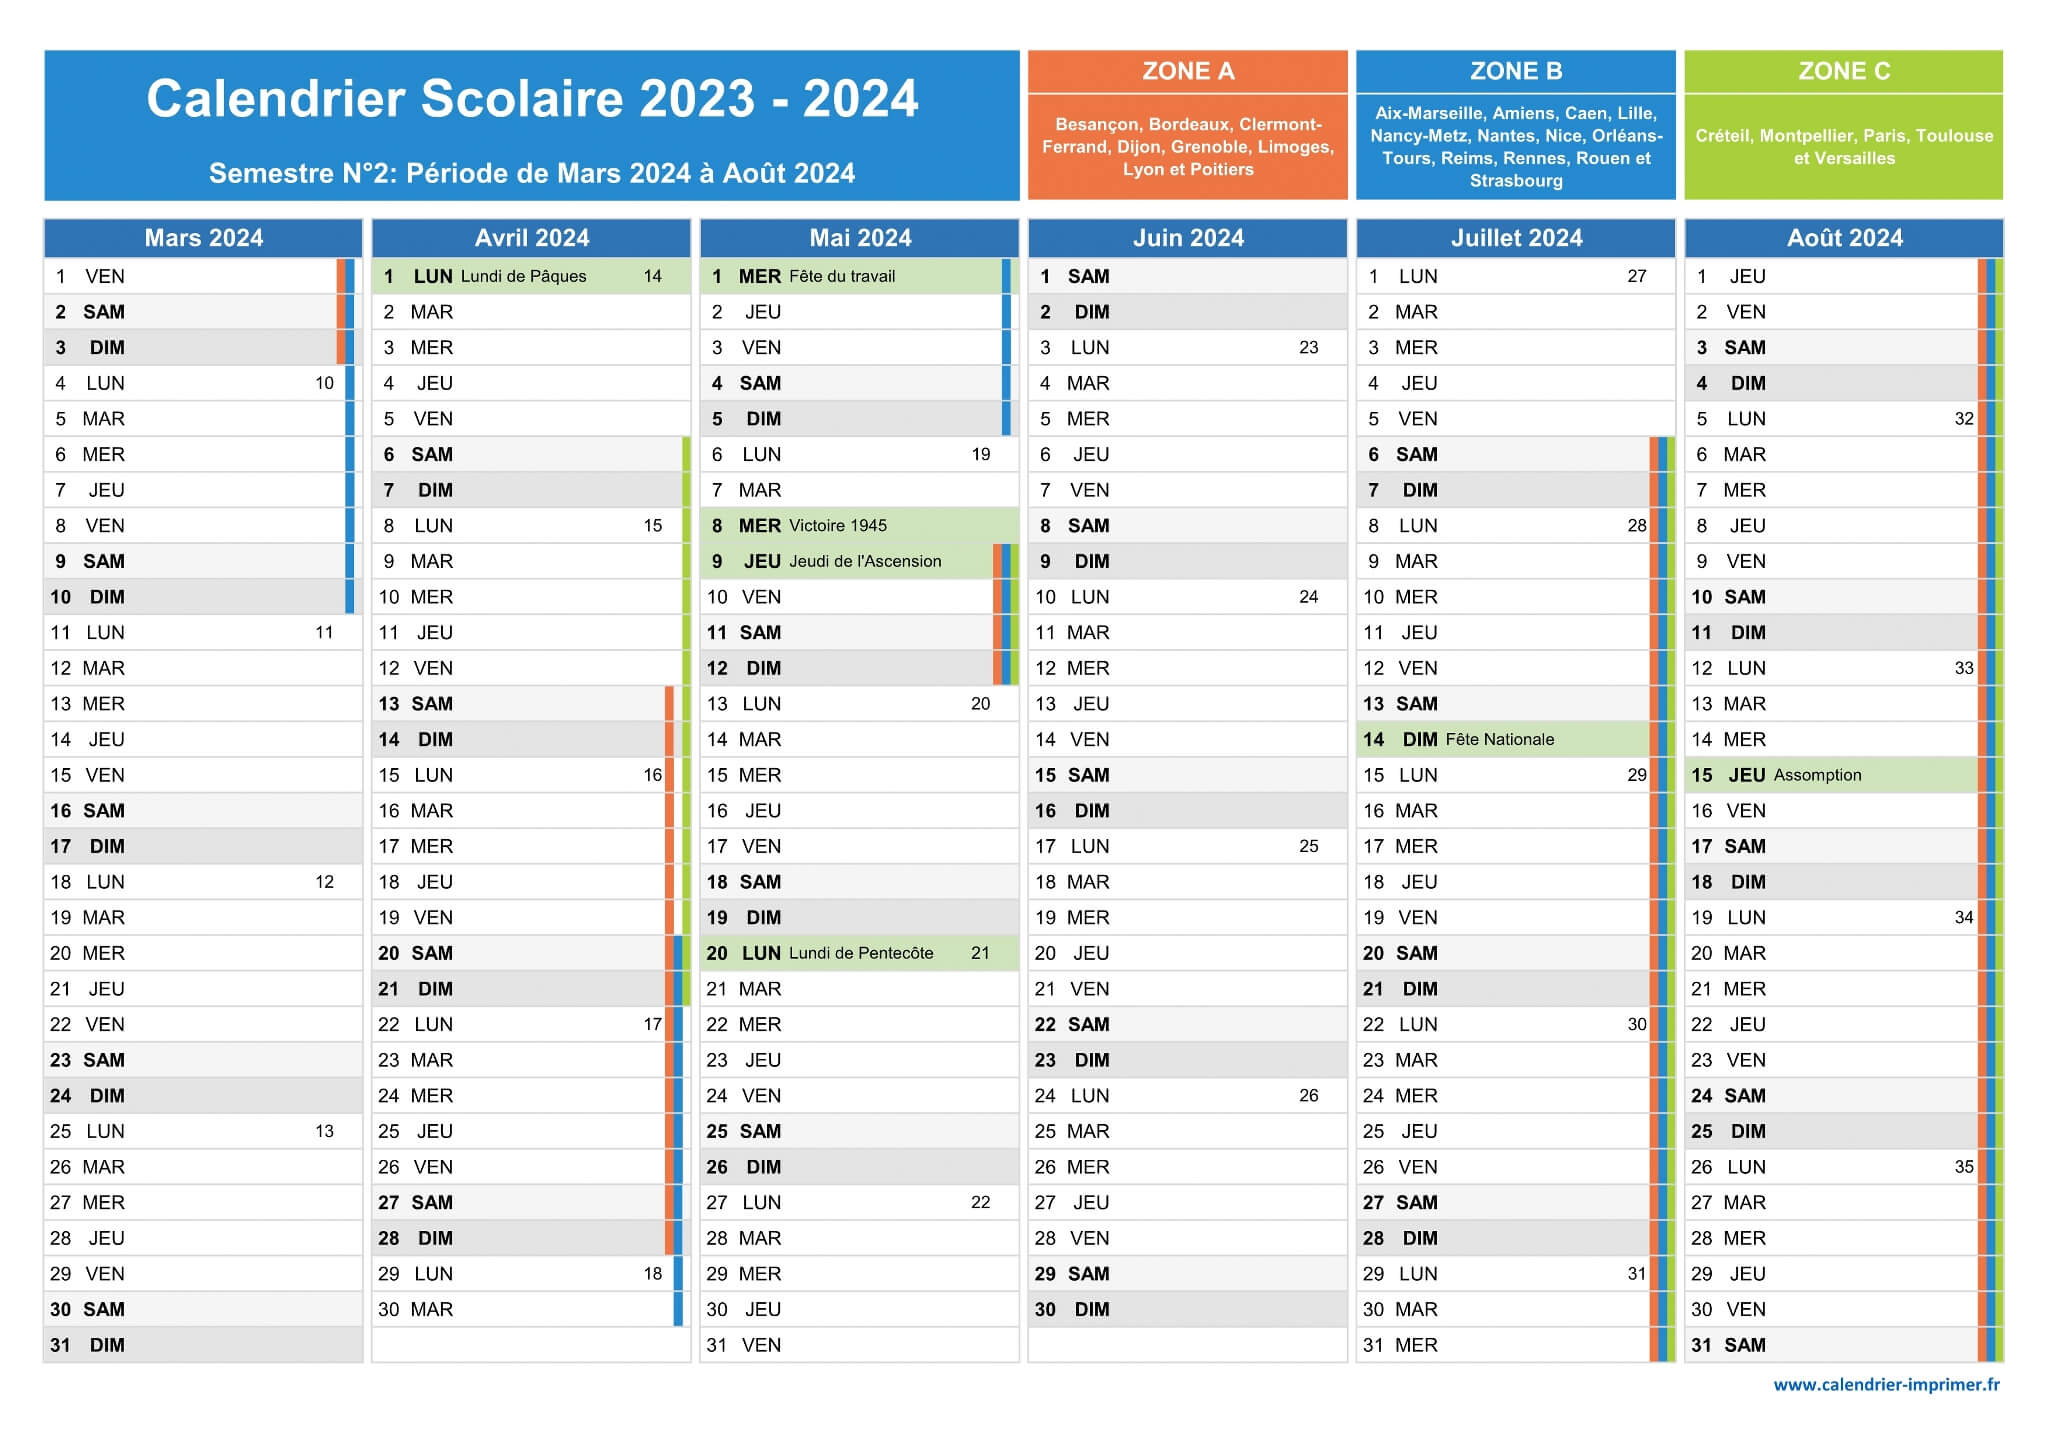 Vacances scolaires 2023-2024. Téléchargez le calendrier avec toutes les  dates de rentrée et de congés par zone